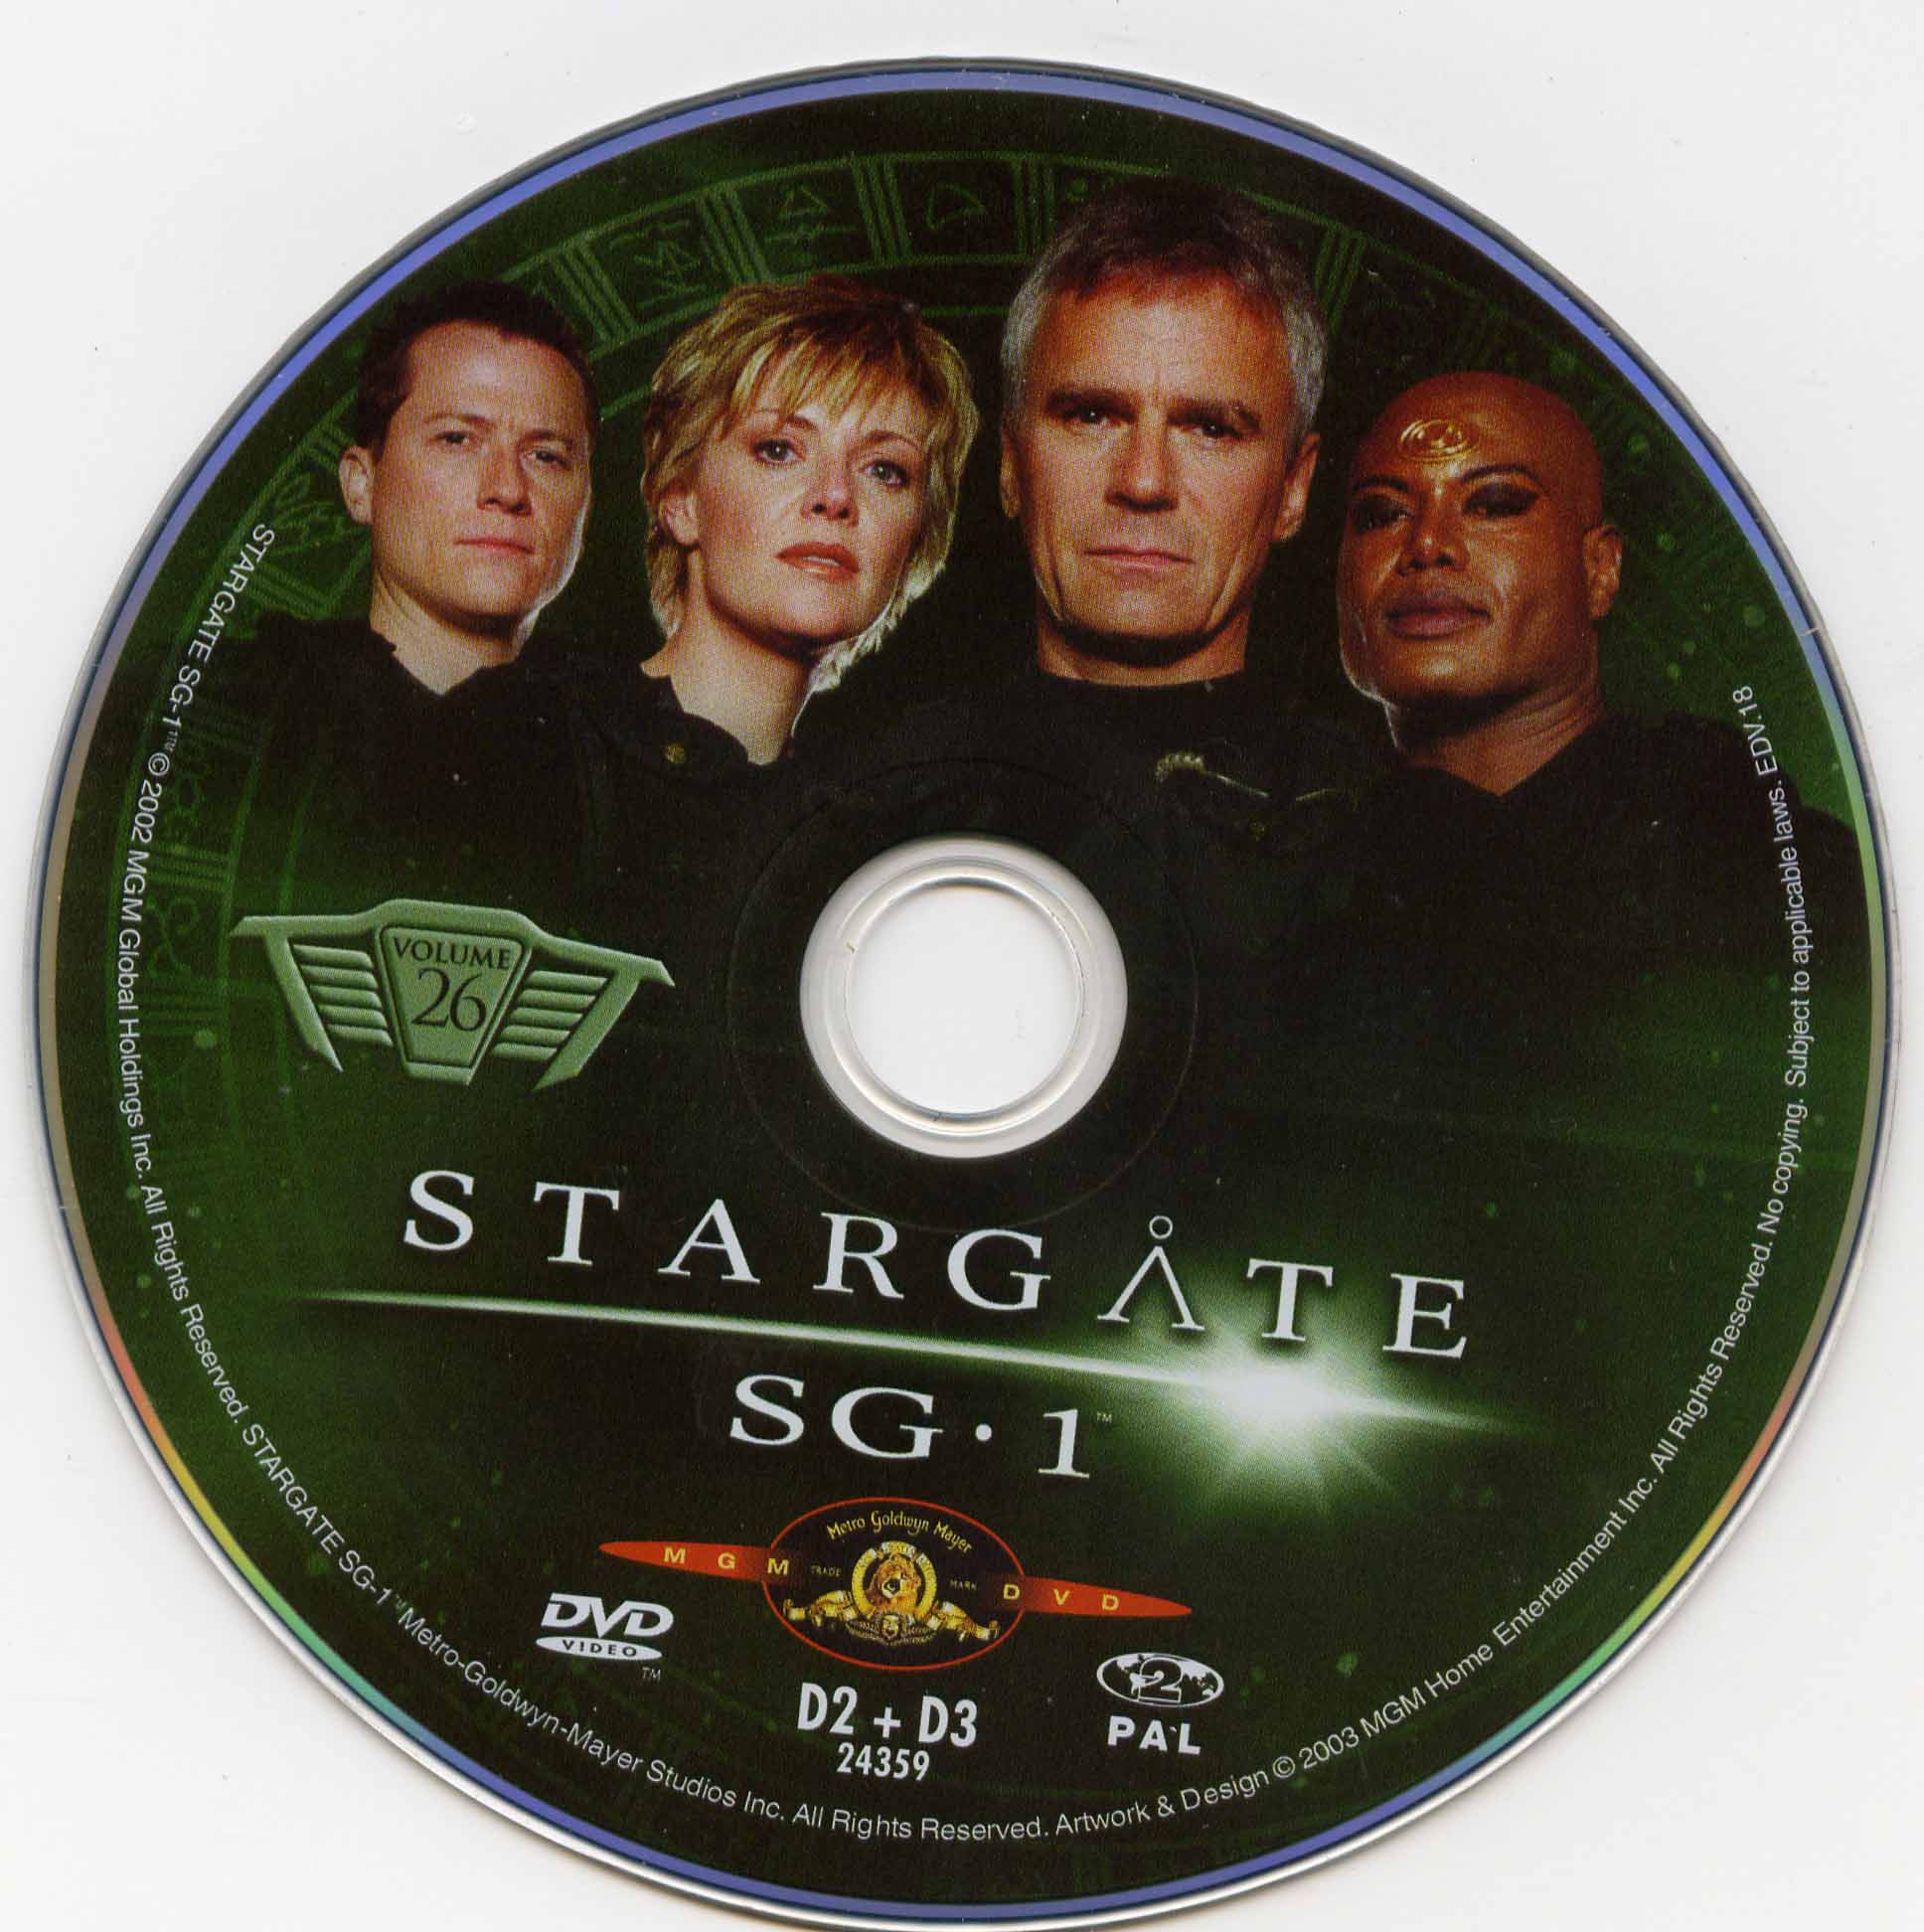 Stargate SG1 vol 26